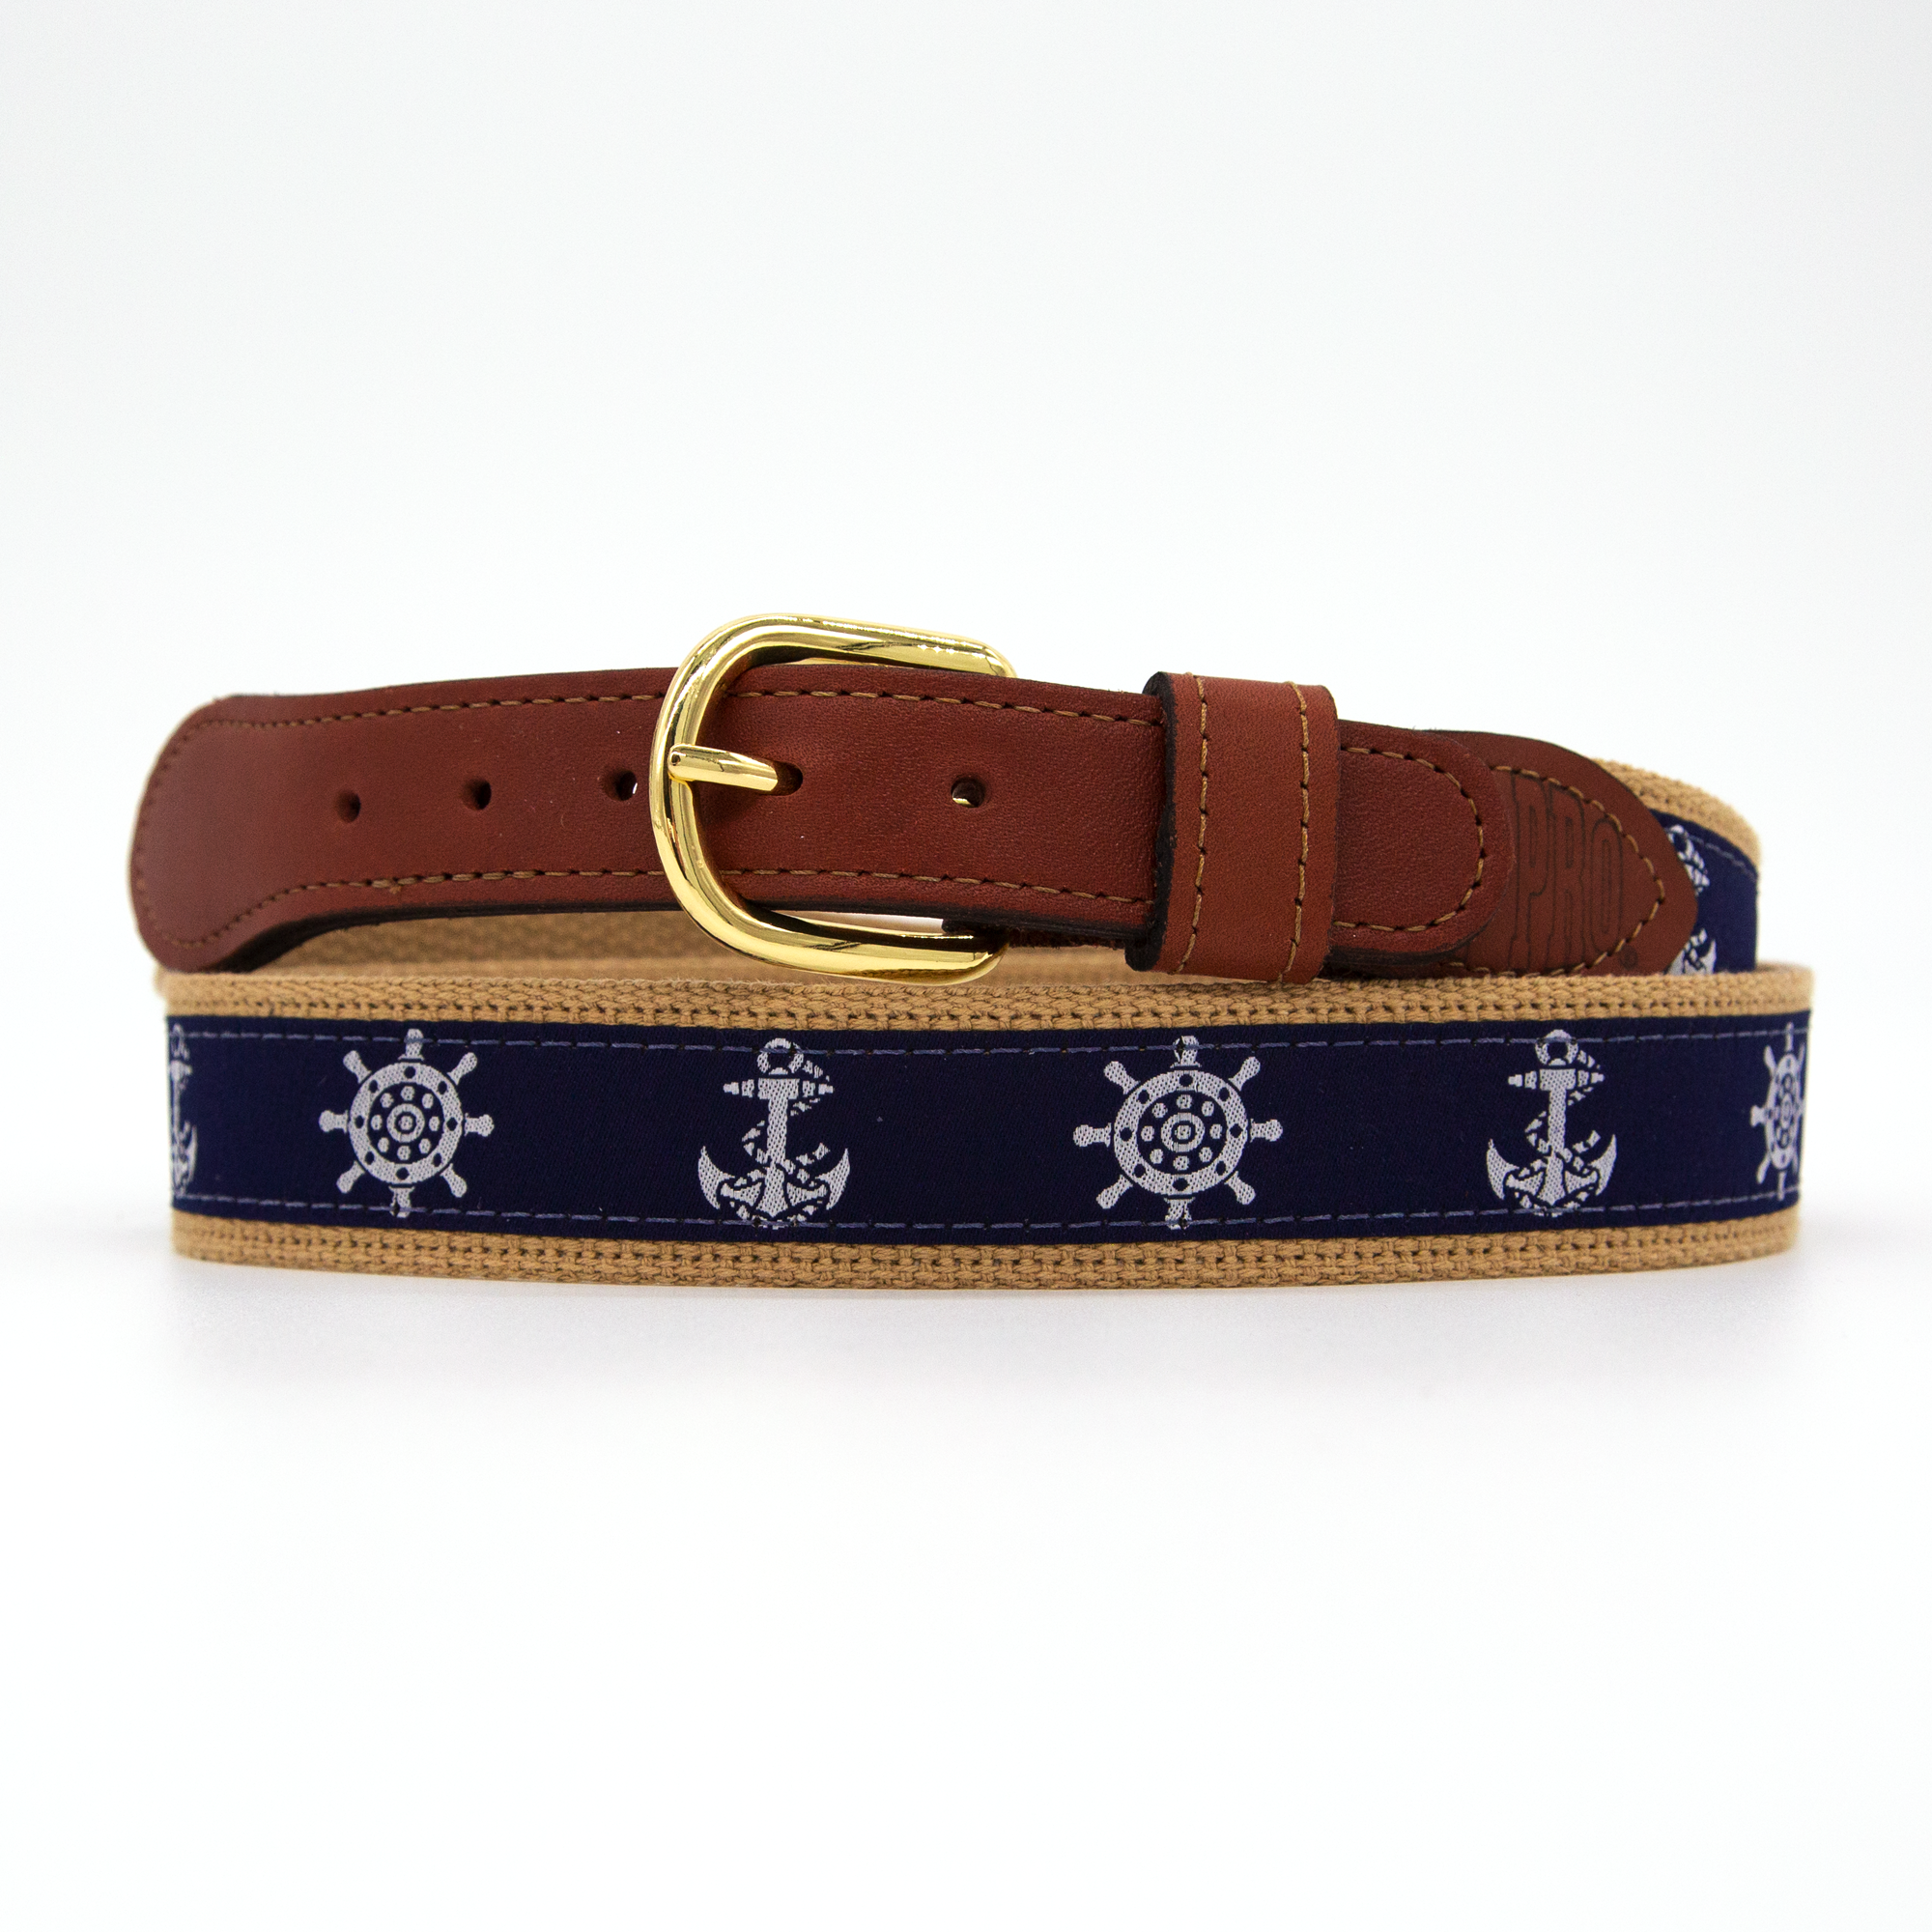 Zep Pro - Navy Sailfish Belt 42 / Belts & Suspenders